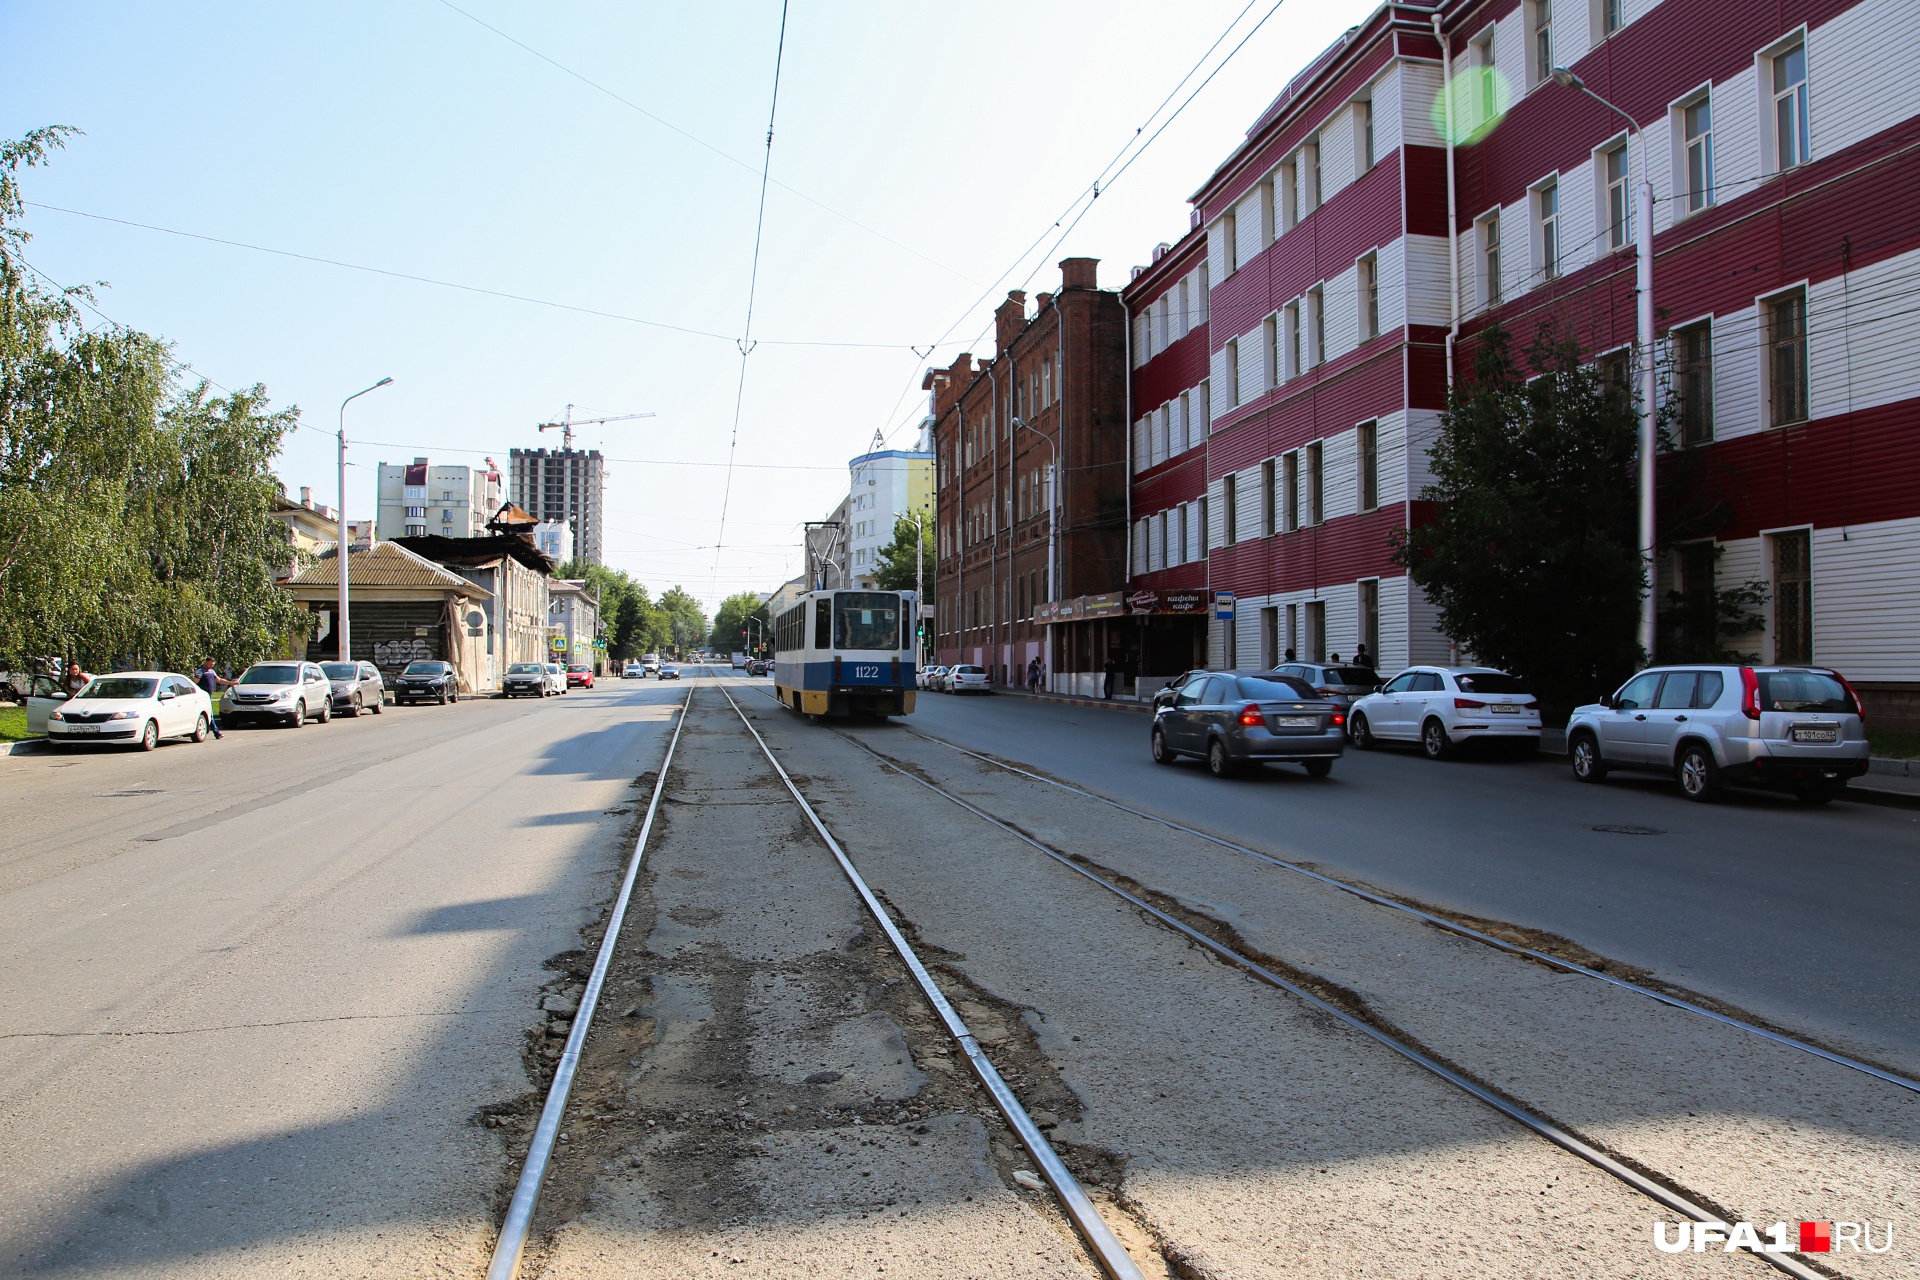 Когда-то улица Аксакова именовалась Каретной — видимо, по названию транспорта, на котором можно было по ней проехать. А в наши дни надо бы переименовать ее в Тракторную